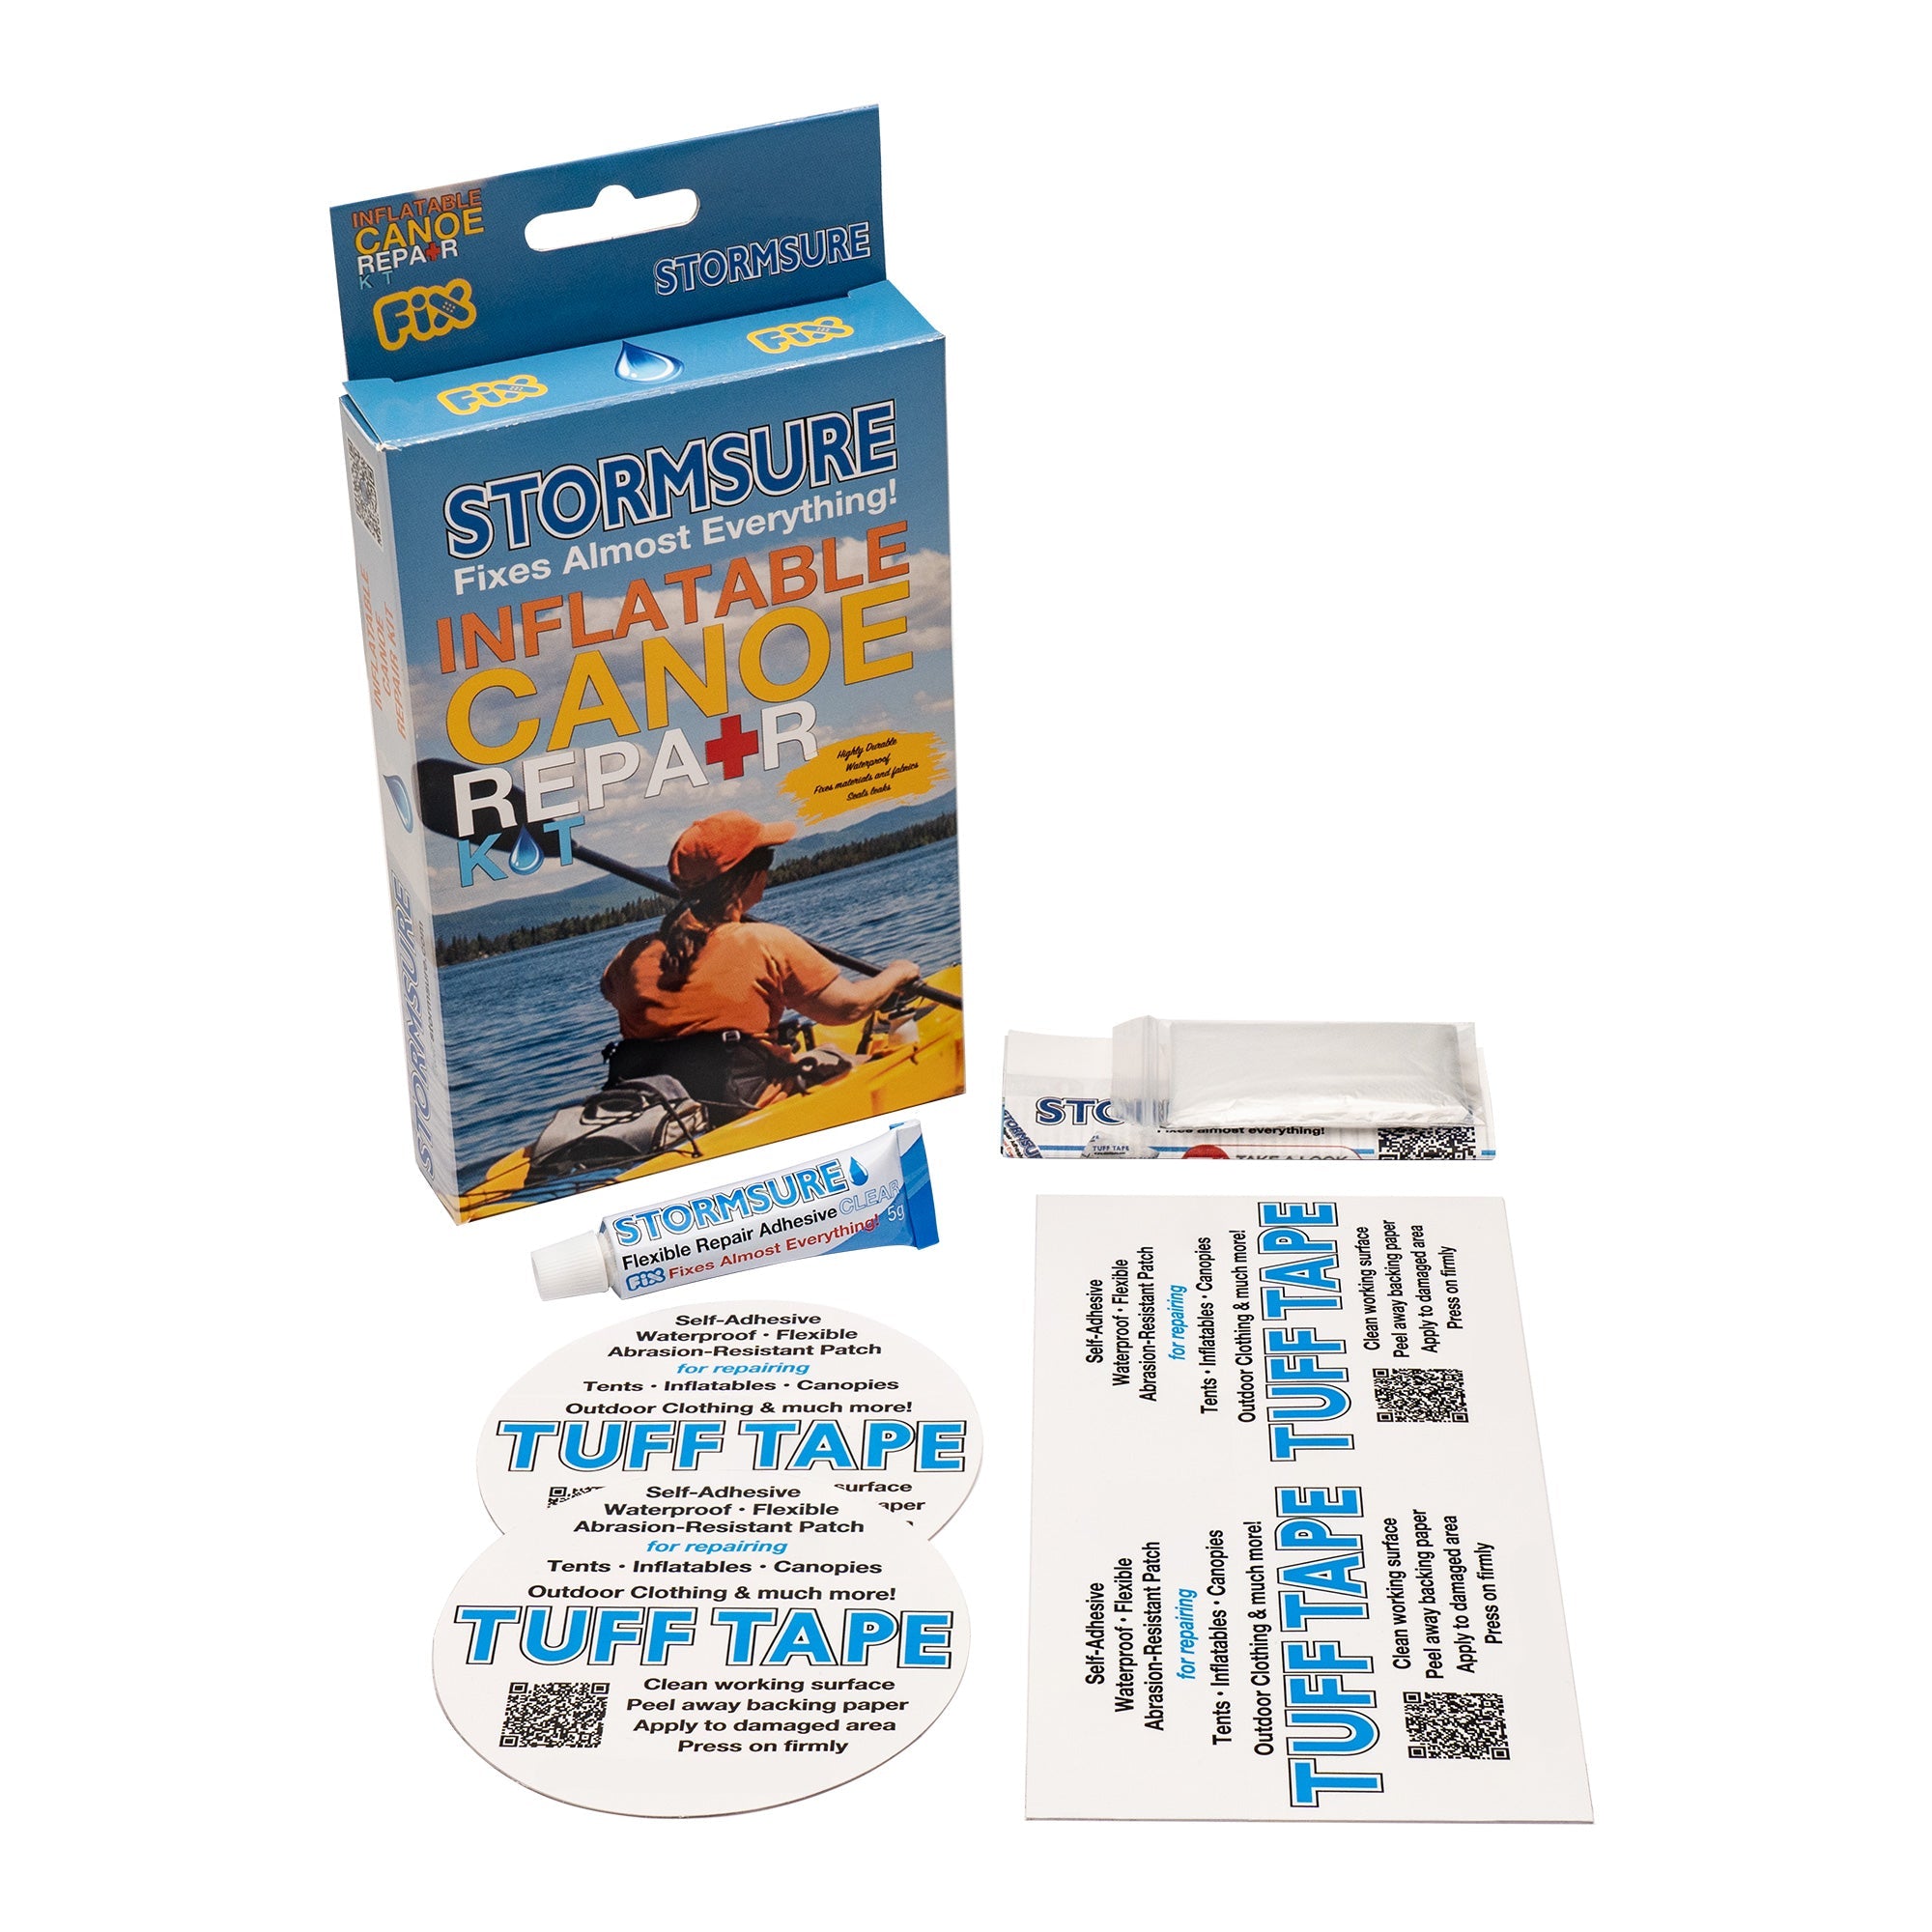 Stormsure Inflatable Canoe & Kayak Repair Kit